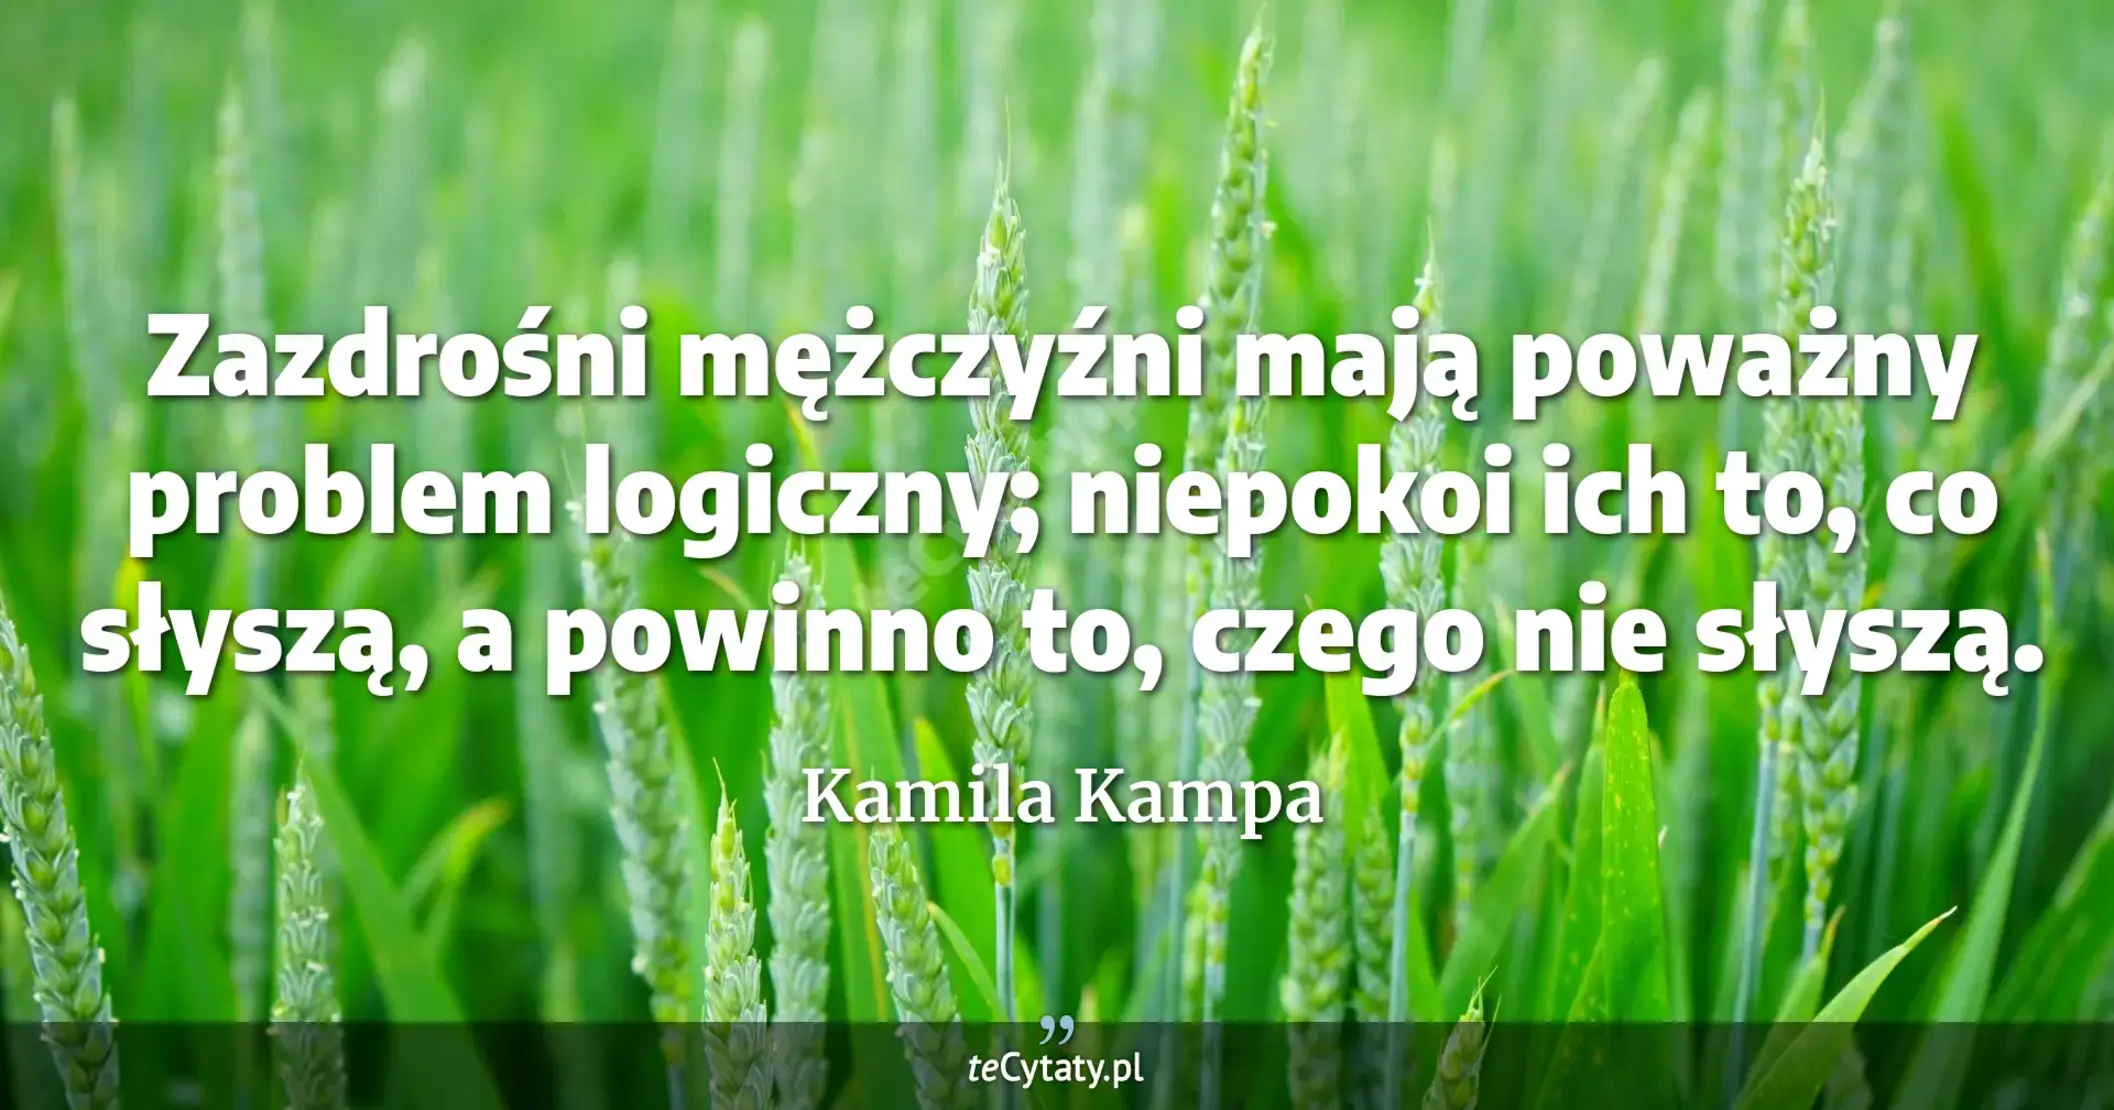 Zazdrośni mężczyźni mają poważny problem logiczny; niepokoi ich to, co słyszą, a powinno to, czego nie słyszą. - Kamila Kampa